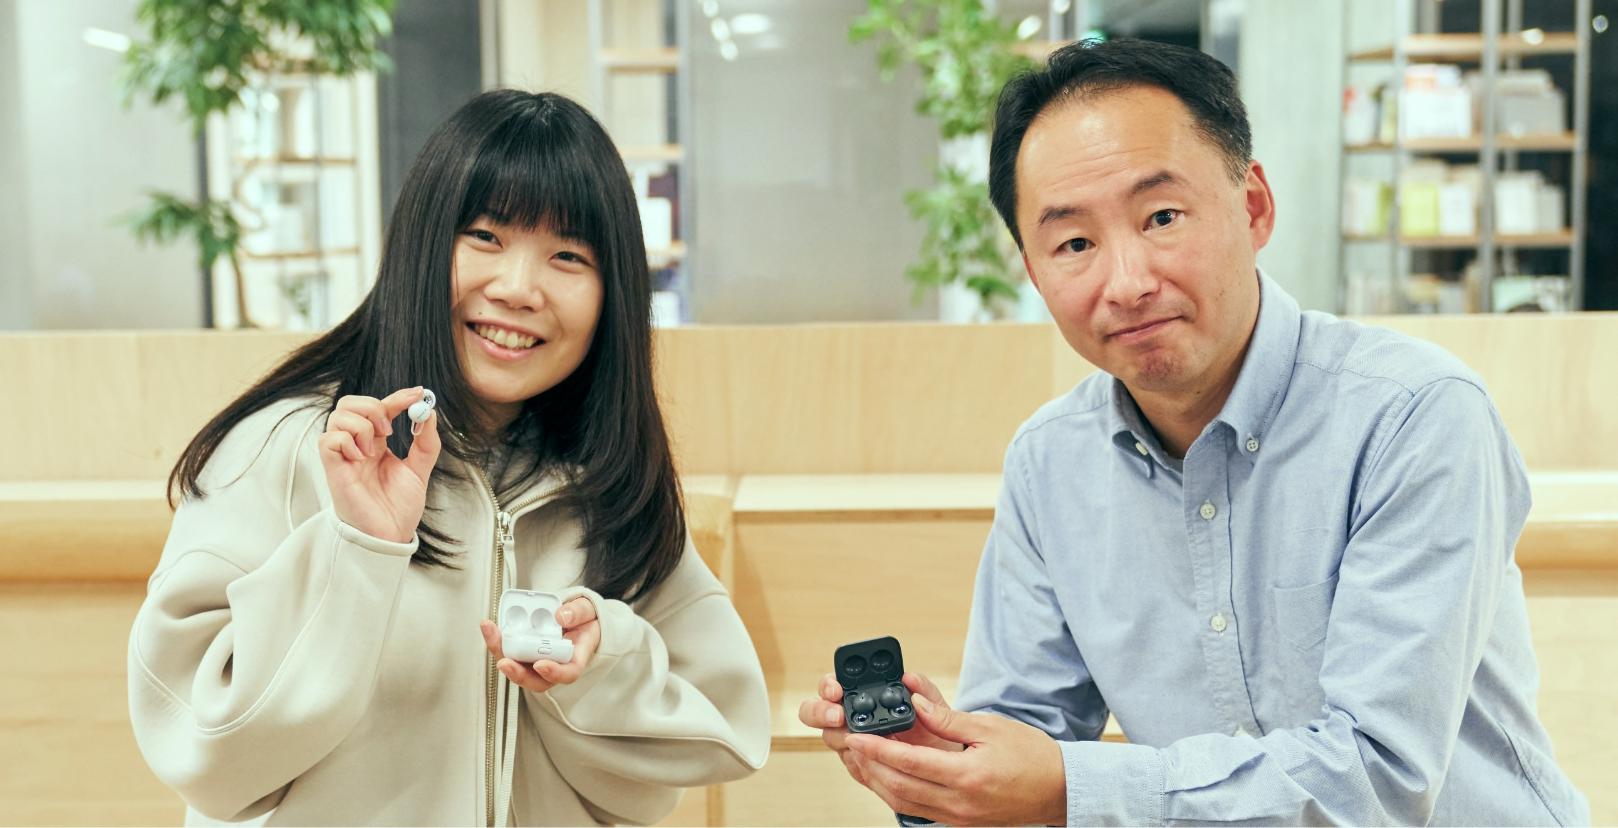 三木晴子さんと田中光謙さんがベンチに座りカメラに向かってLinkBudsを見せている